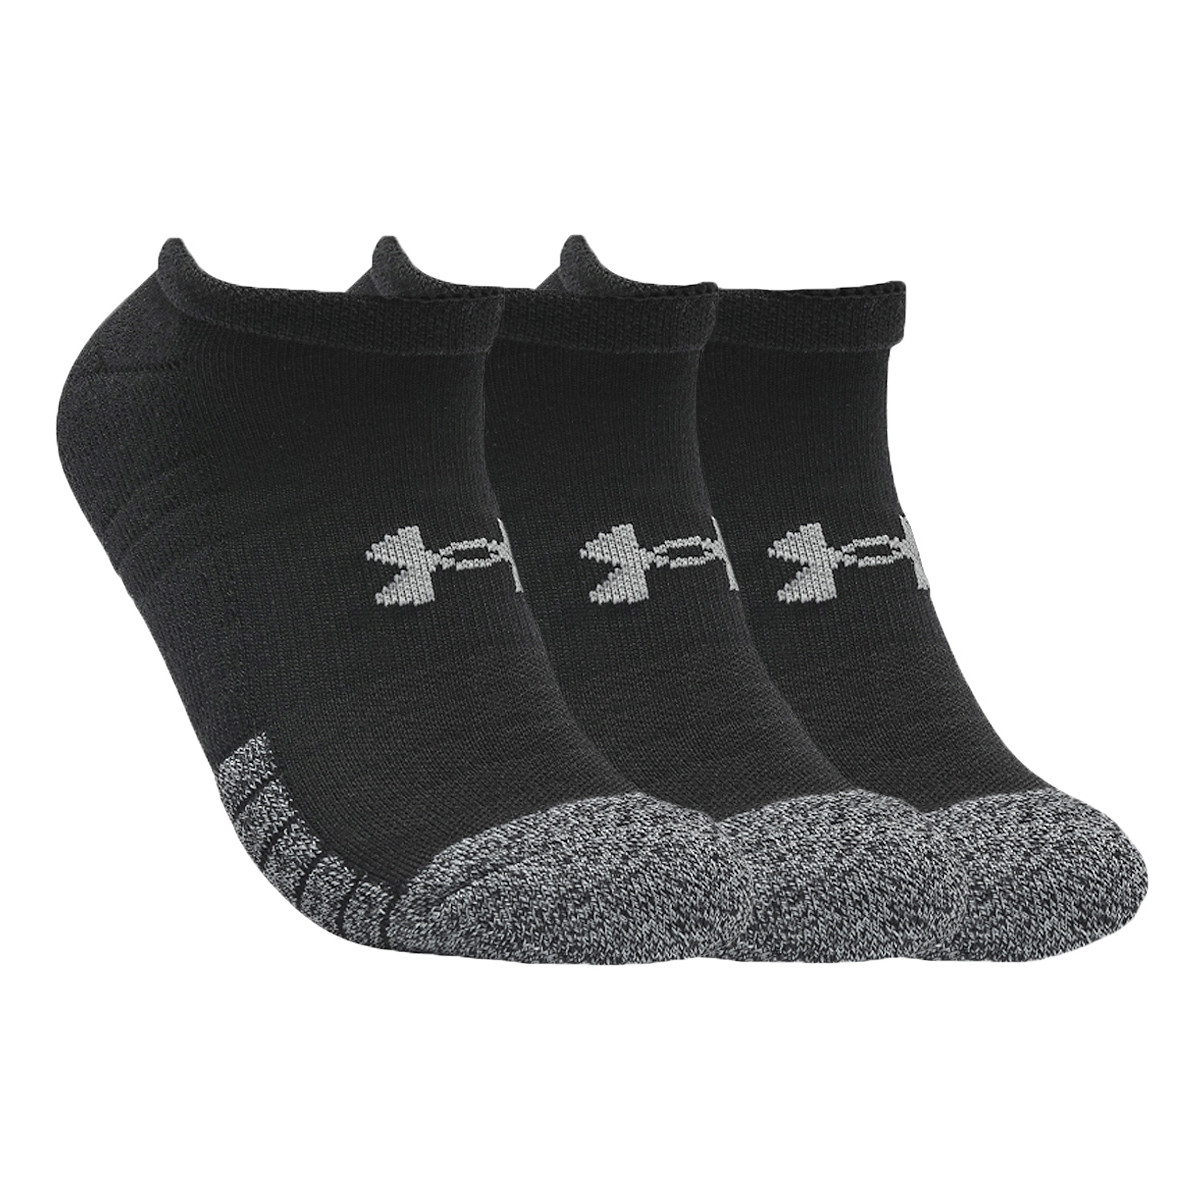 Αθλητικές κάλτσες Under Armour HeatGear No Show Socks 3-Pack